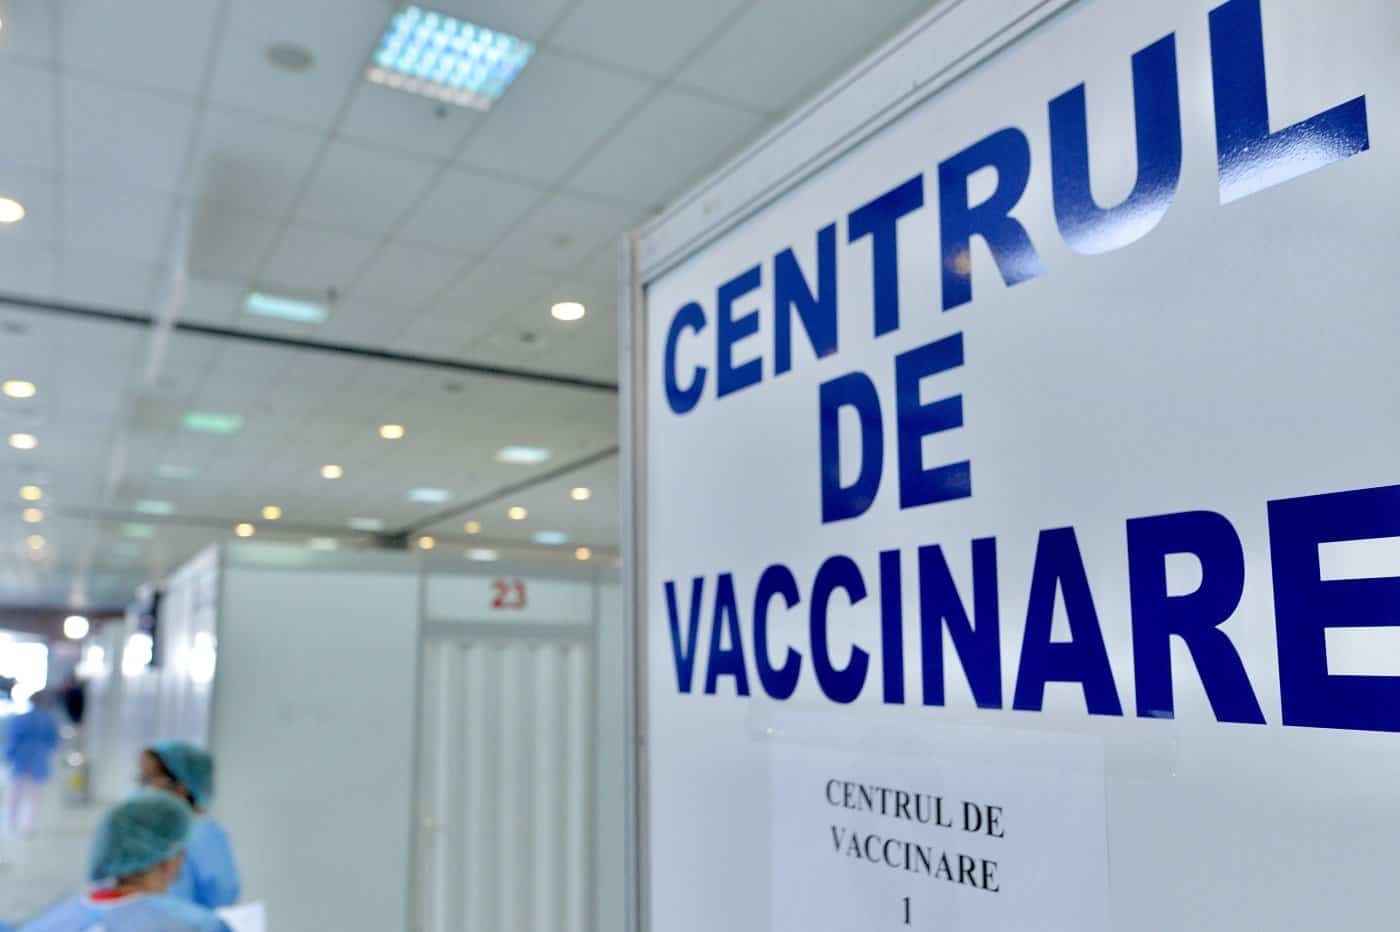 centru de vaccinare închis după descinderi ale poliției - sunt suspiciuni privind certificate false